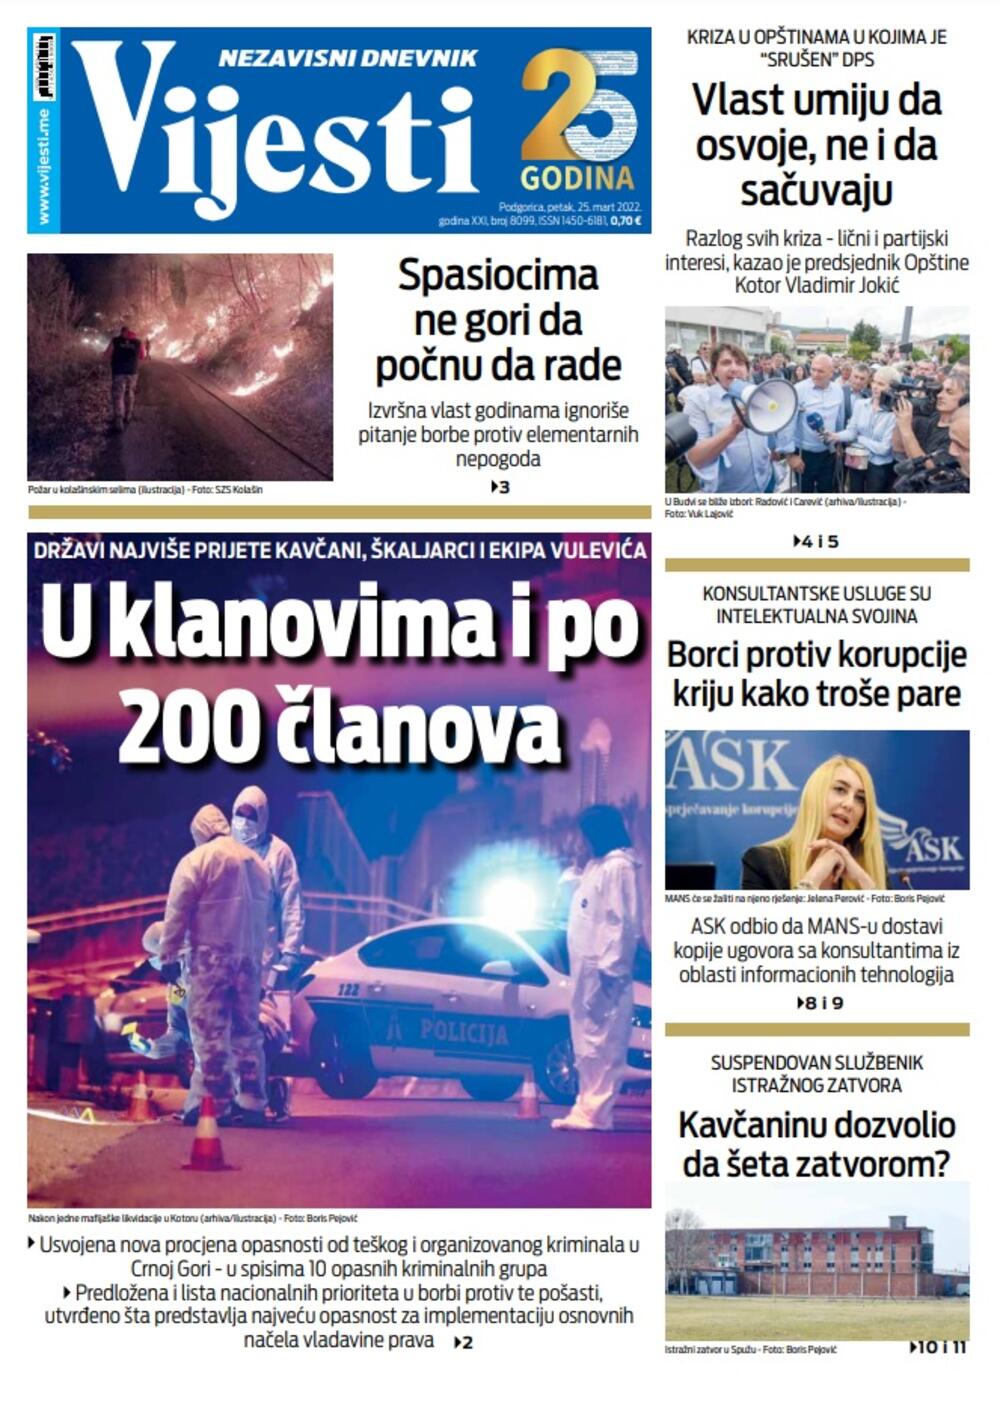 Naslovna strana "Vijesti" za 25. mart 2022., Foto: Vijesti